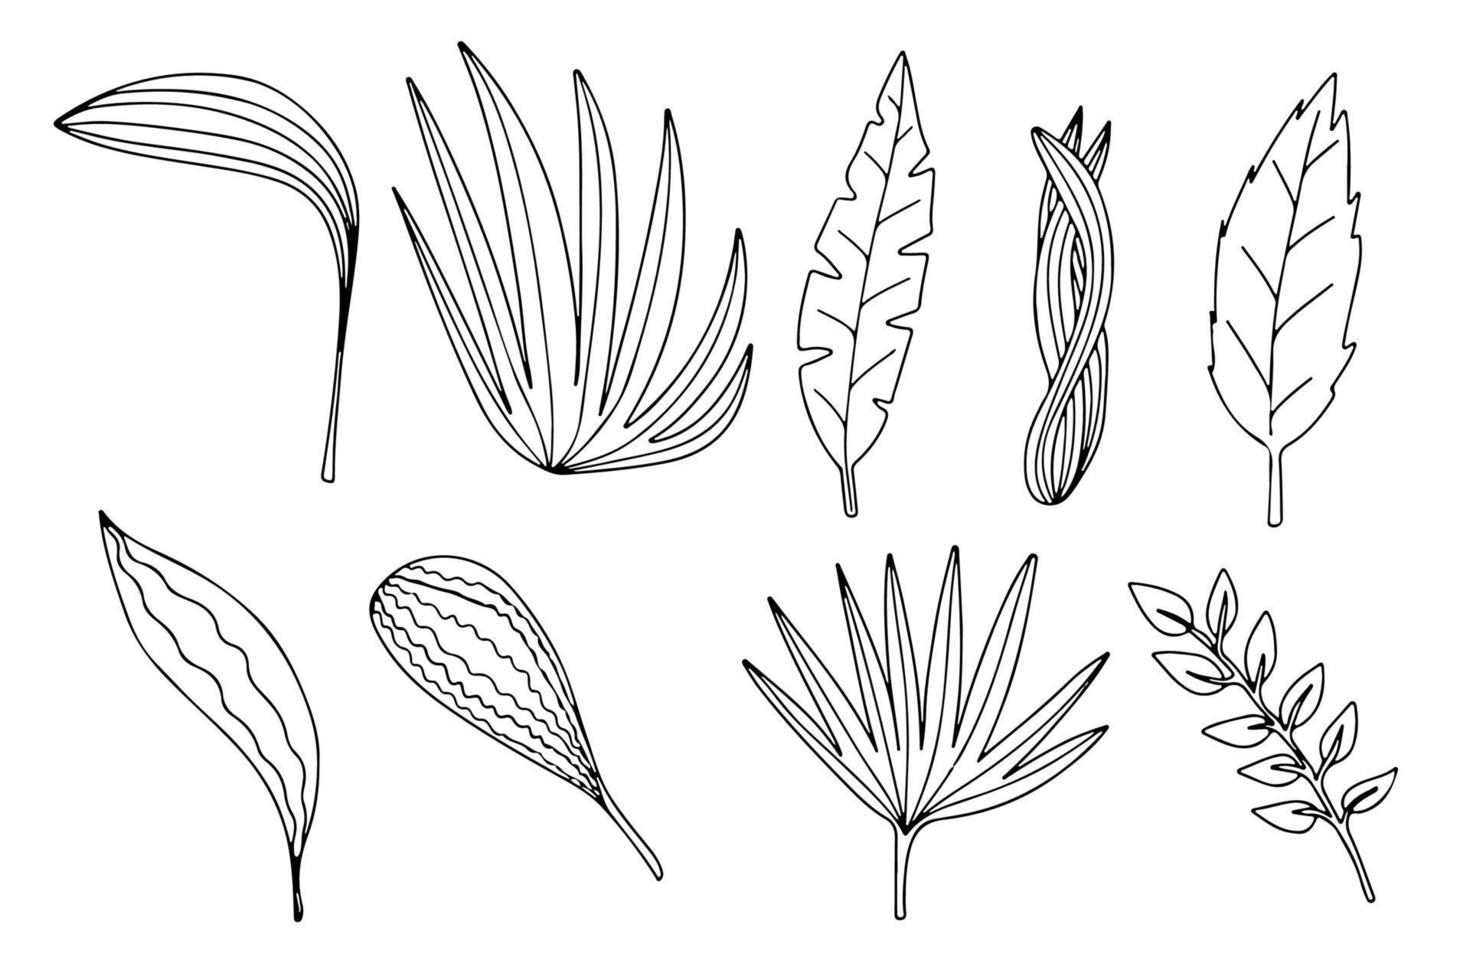 différents types de feuilles isolés sur fond blanc. vecteur feuilles de palmier, monstera et autres illustrations de plantes.